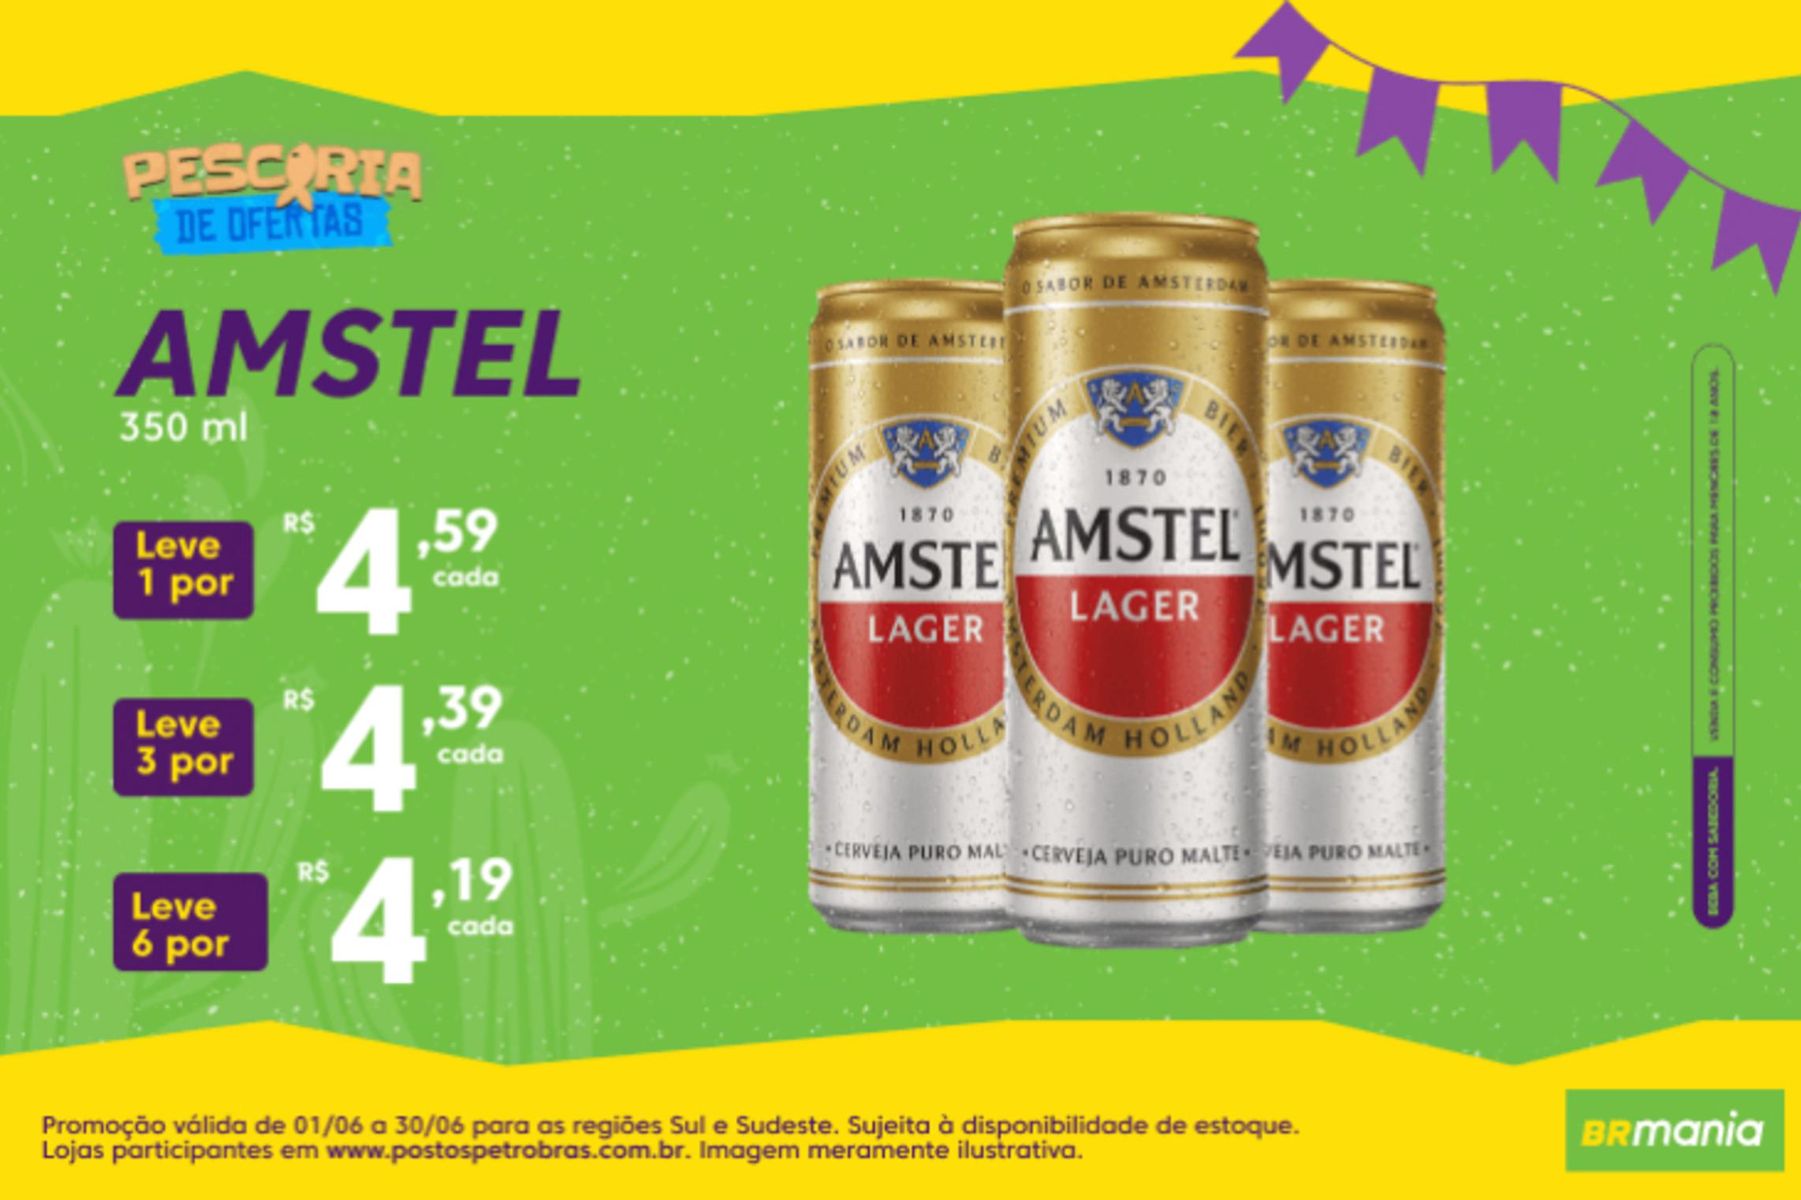 Amstel: Leve 3 por R$ 13